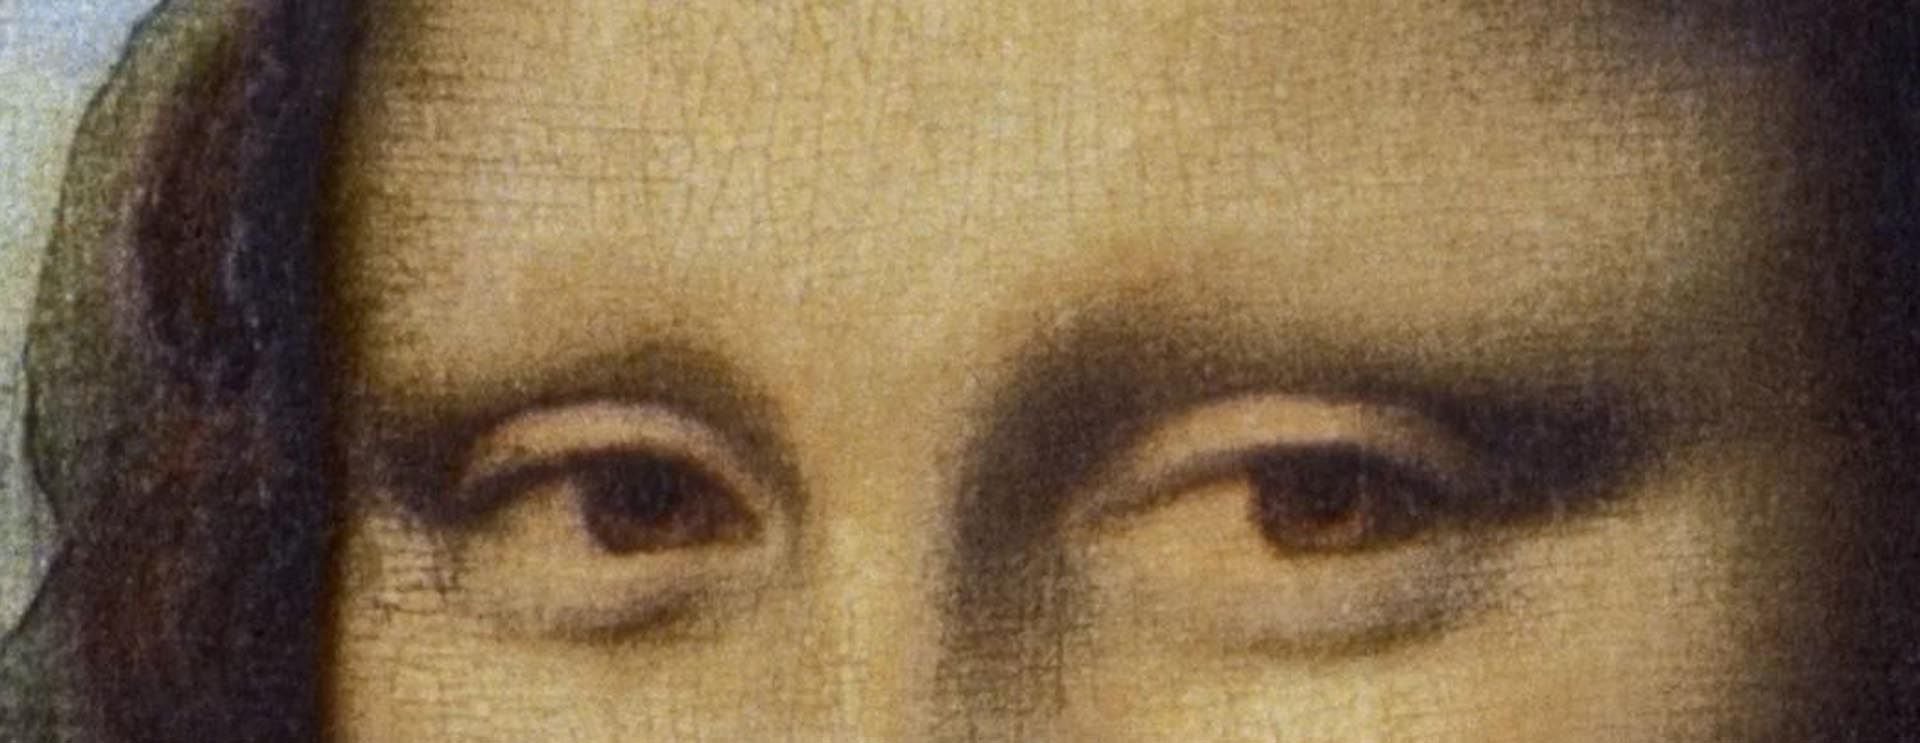 Encontrar plumbonacrita en la “Mona Lisa” atestigua “el espíritu de experimentación apasionada y constante de Leonardo como pintor: es lo que lo hace atemporal y moderno”, comentaron los científicos y expertos.